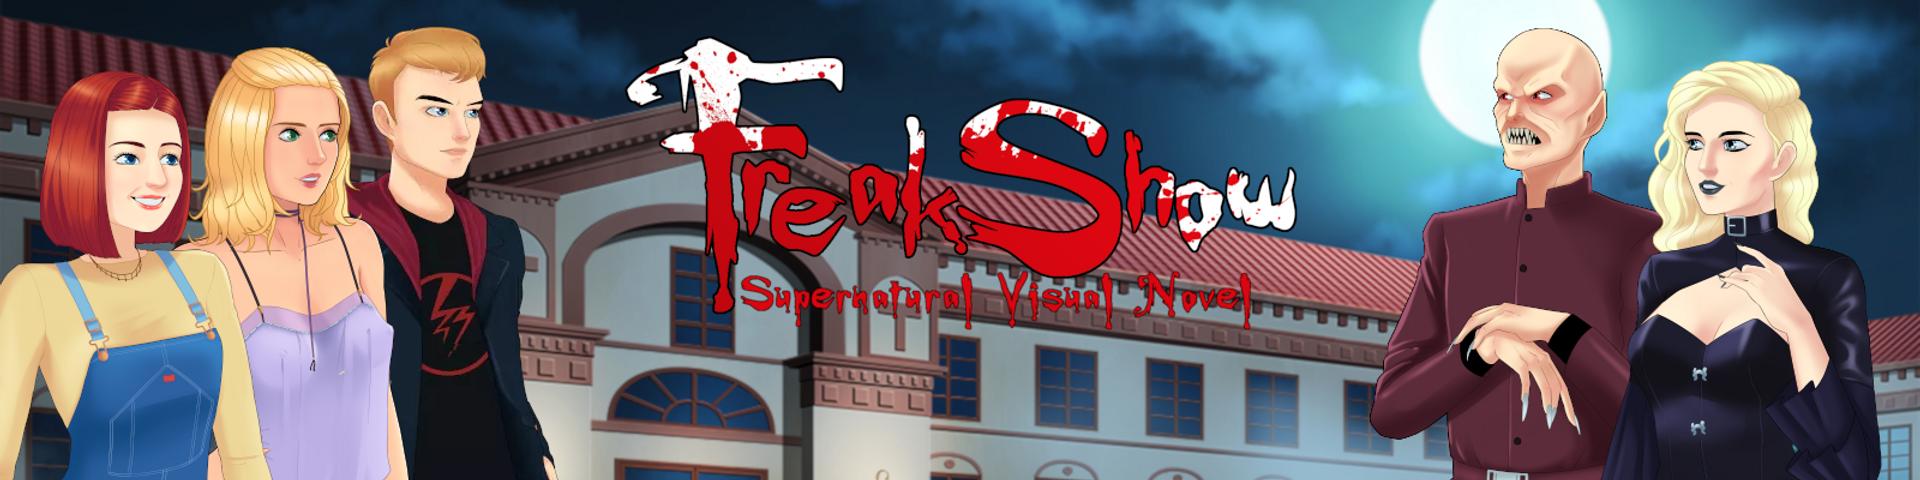 Andrealphus - Freakshow Season 1 Episode 2 Win/Mac